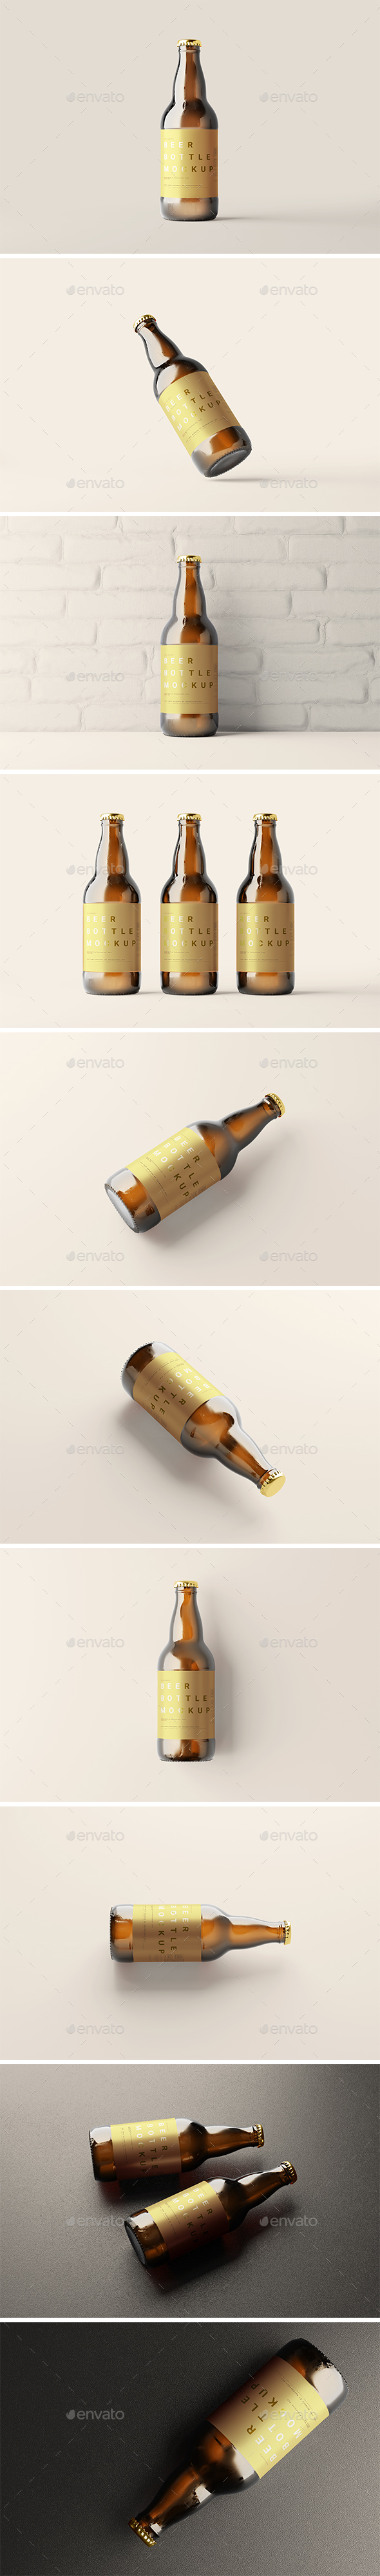 Dark amber beer bottle mockups